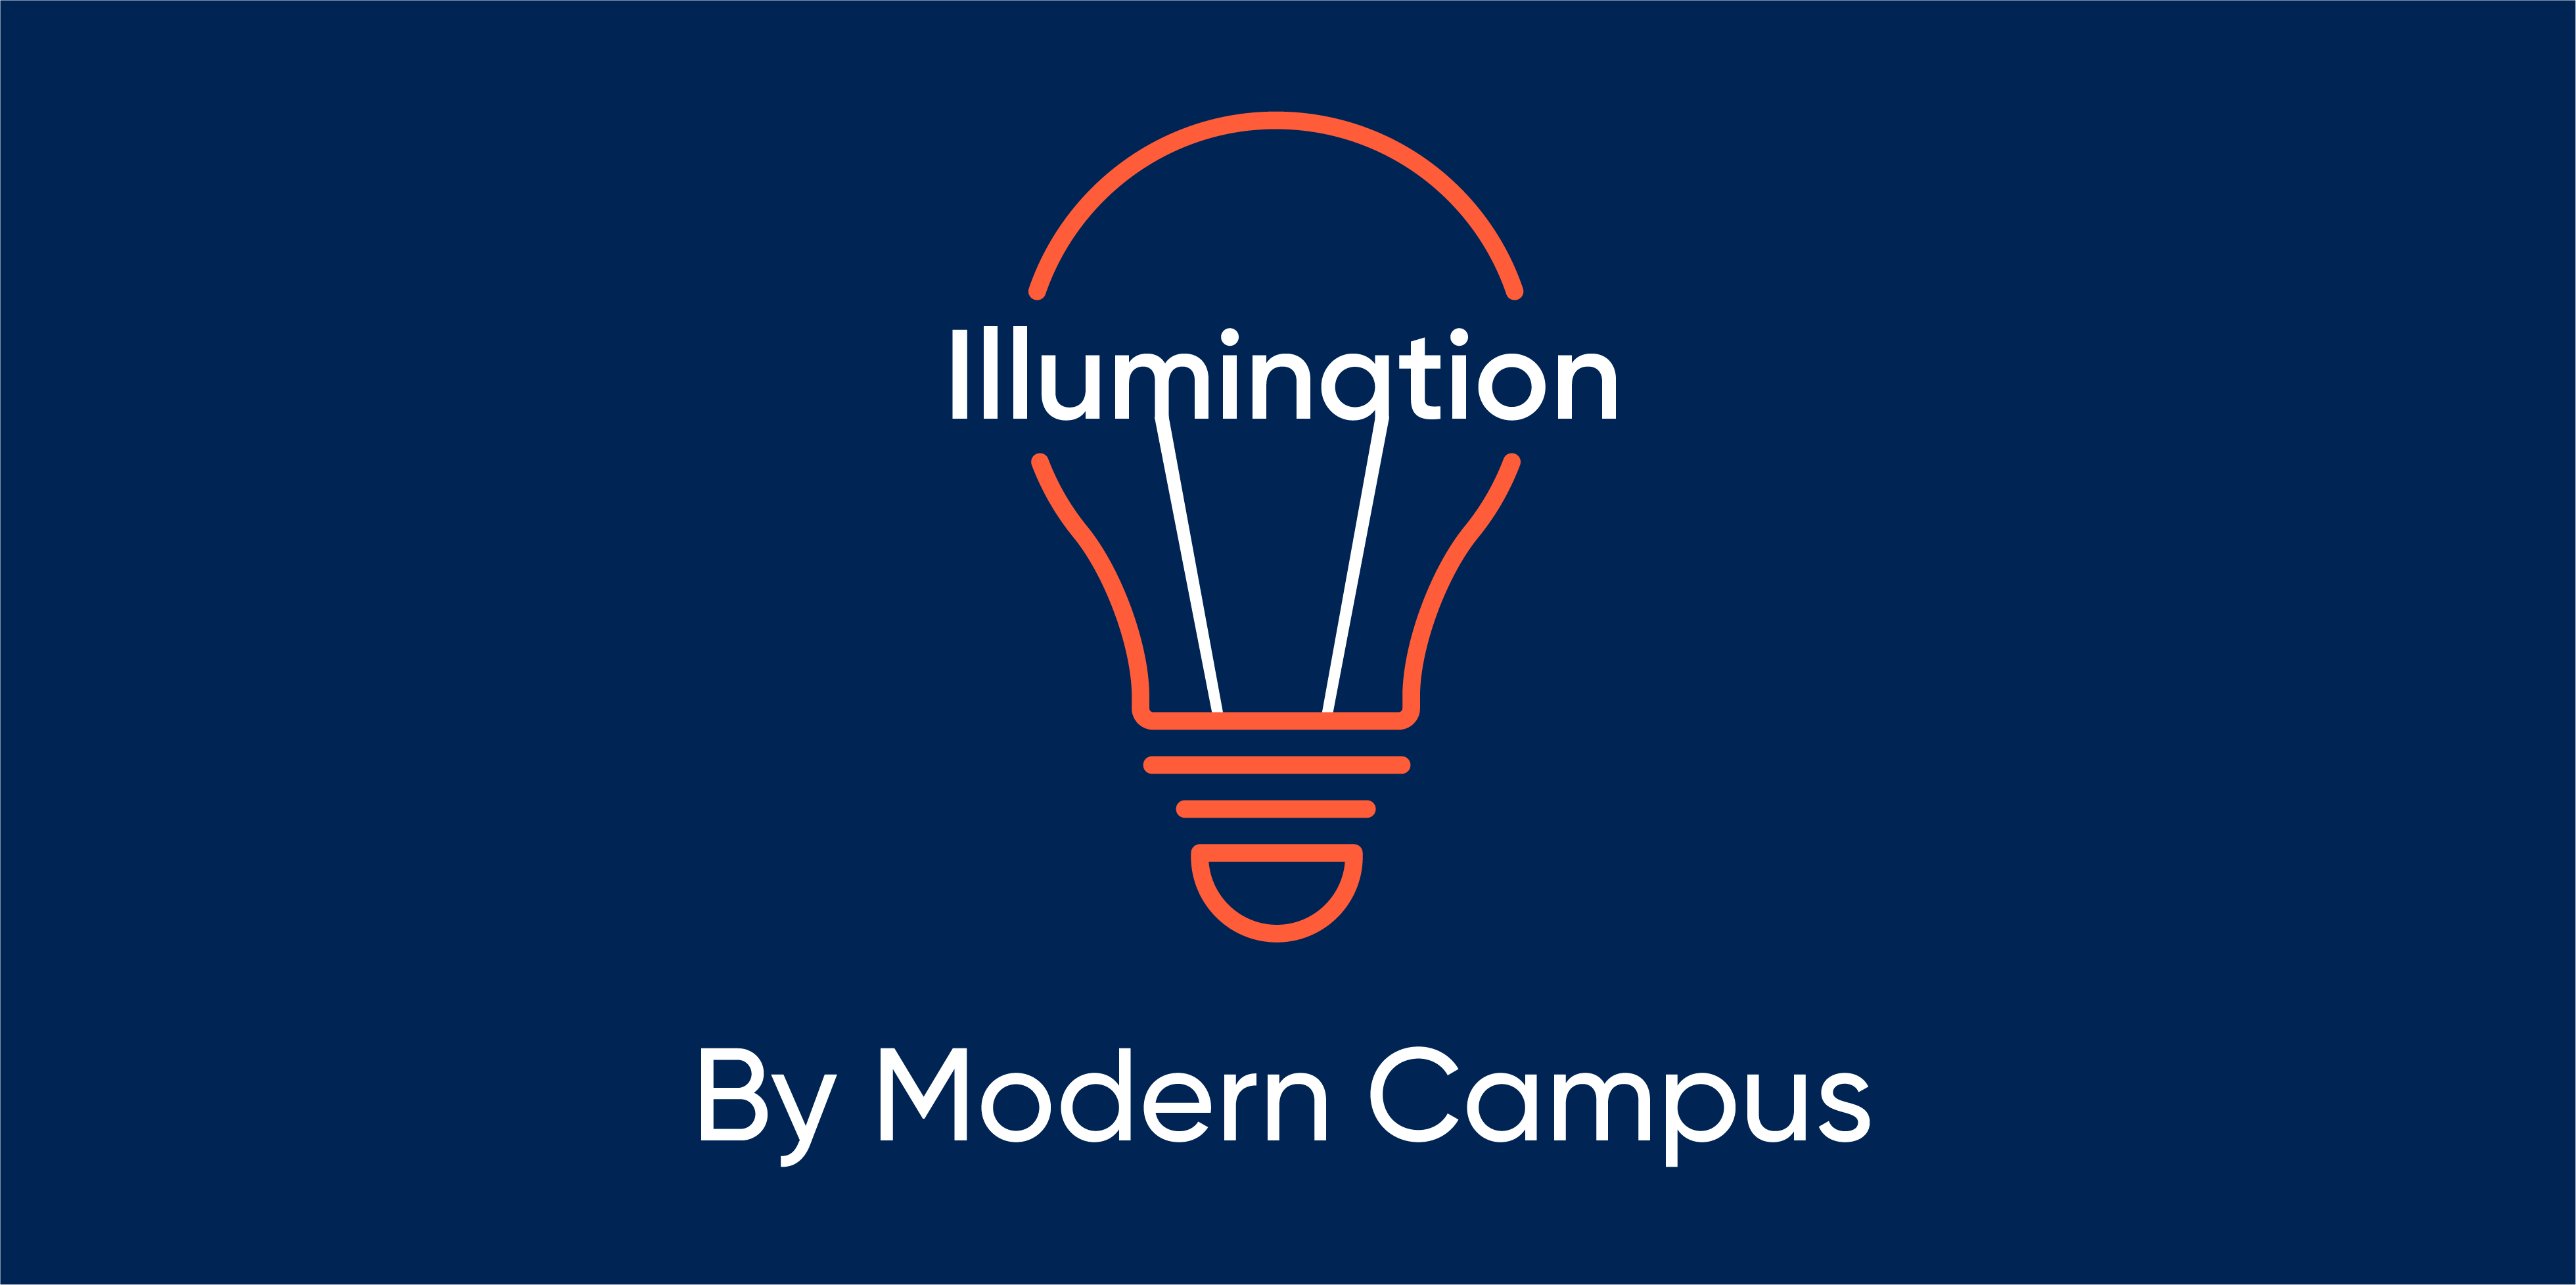 Episode 145: Illumination by Modern Campus